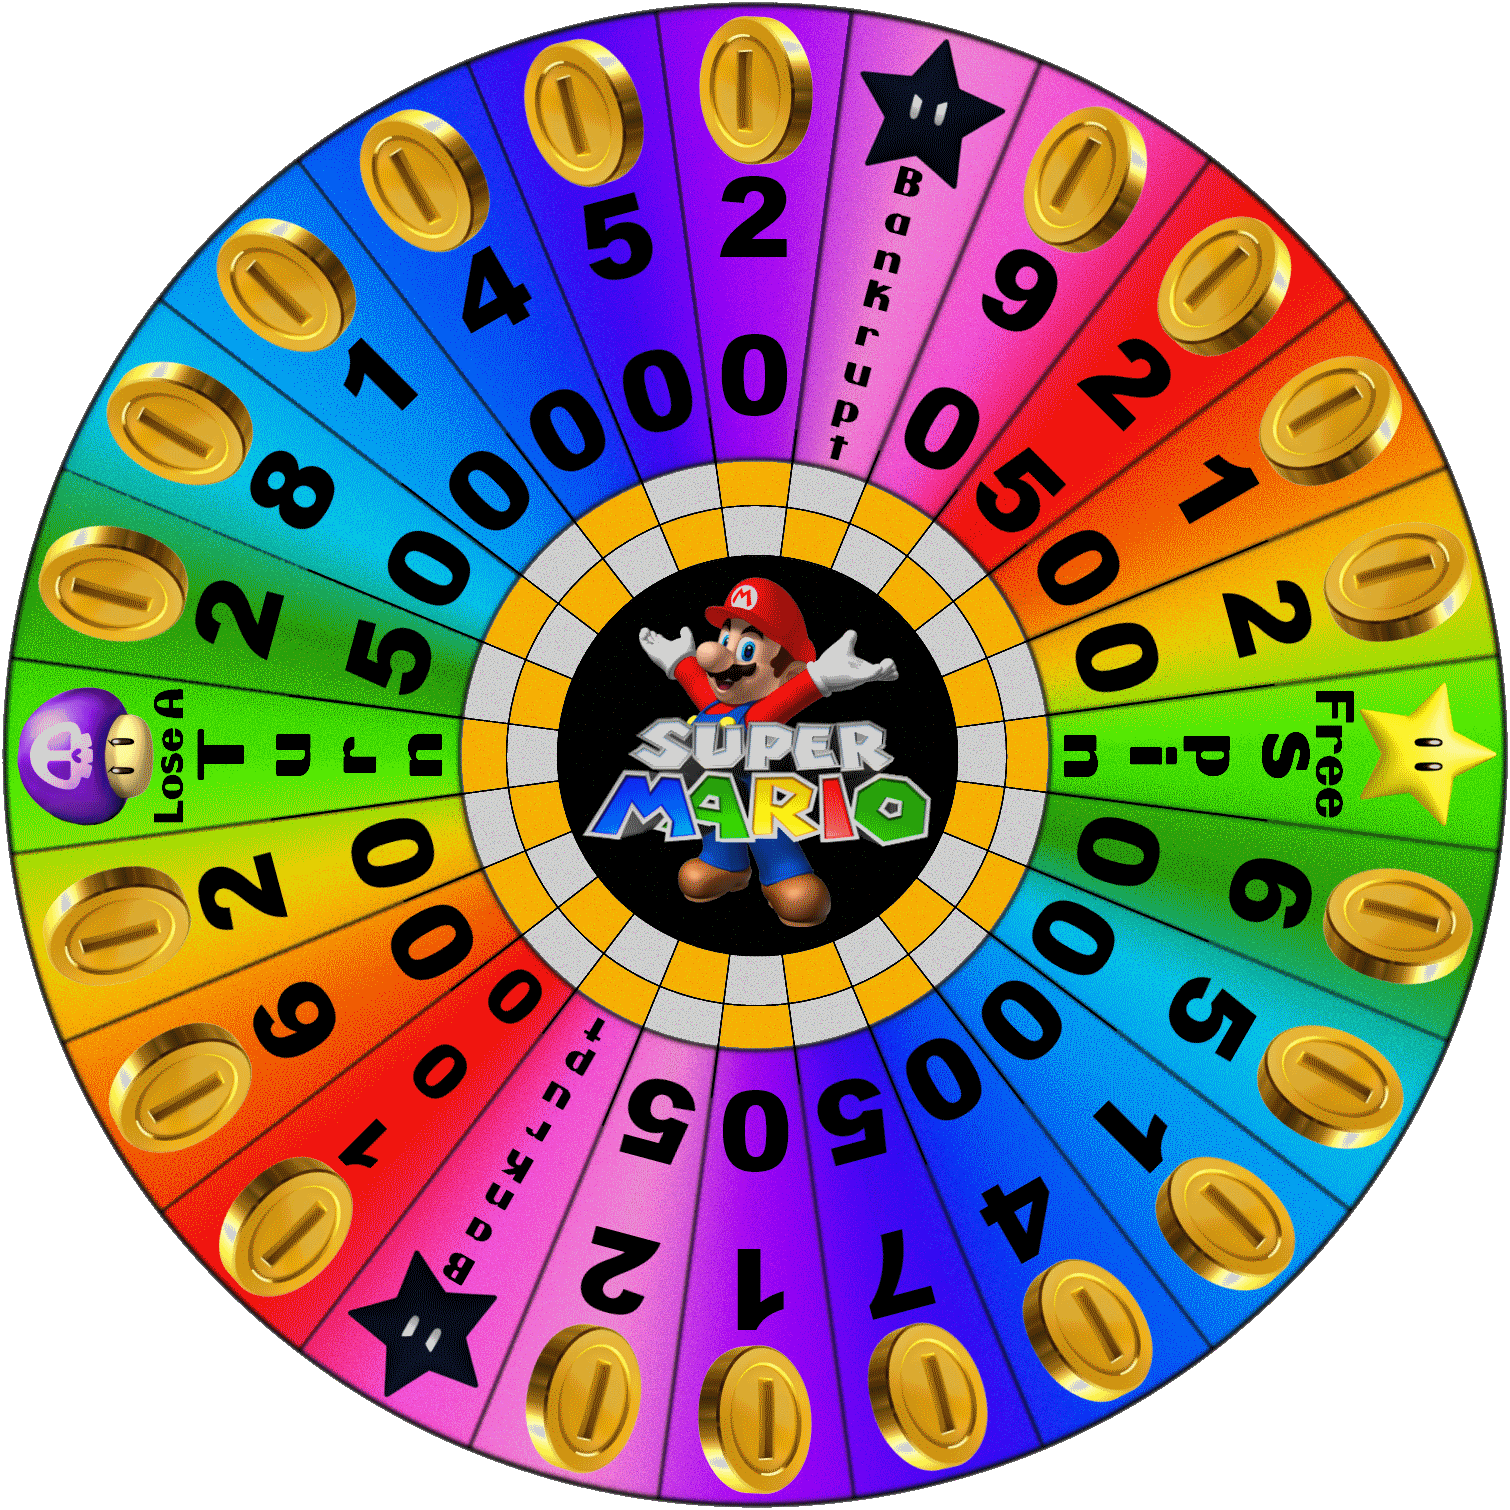 Wheel of Super Mario by LevelInfinitum on DeviantArt1510 x 1510